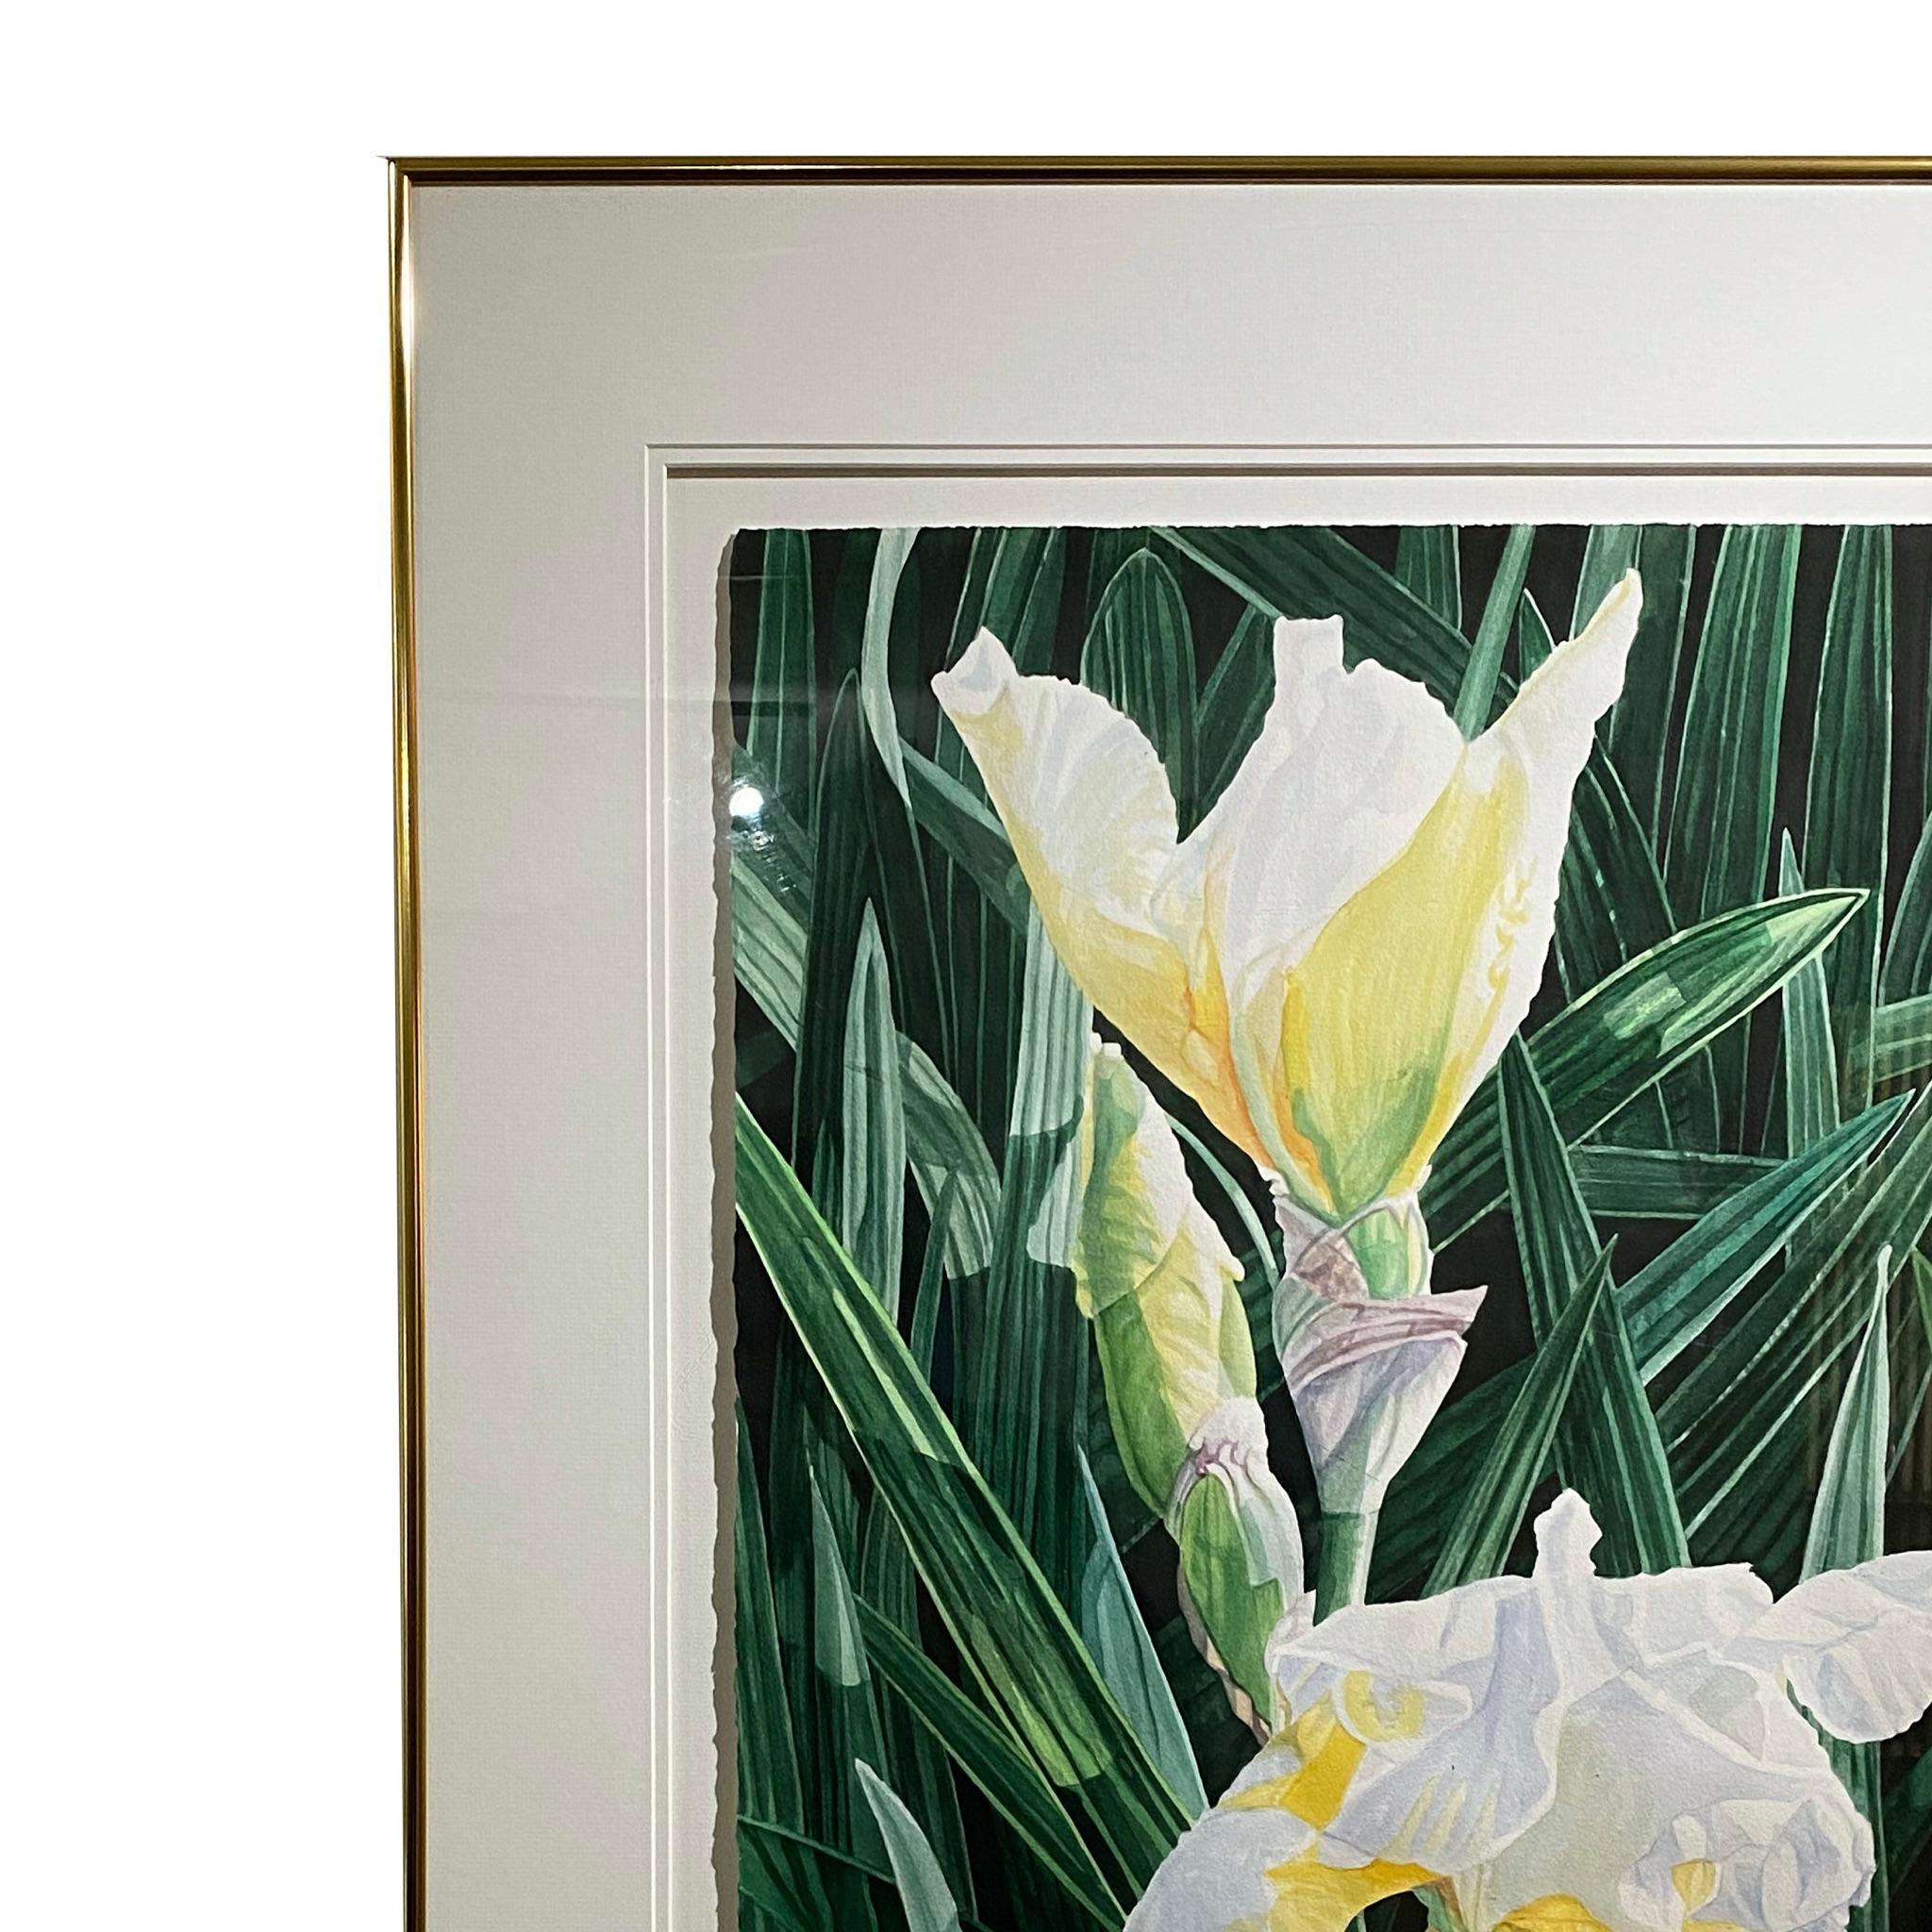     Très belle aquarelle d'iris blancs et de belles feuilles vertes créant une atmosphère d'élégance florale pure.
 Helen Burkett FSWS, FWS, SWS, NWS est originaire d'Arlington, VA, et s'est installée à Sarasota, FL, en 1974, où elle maintient son